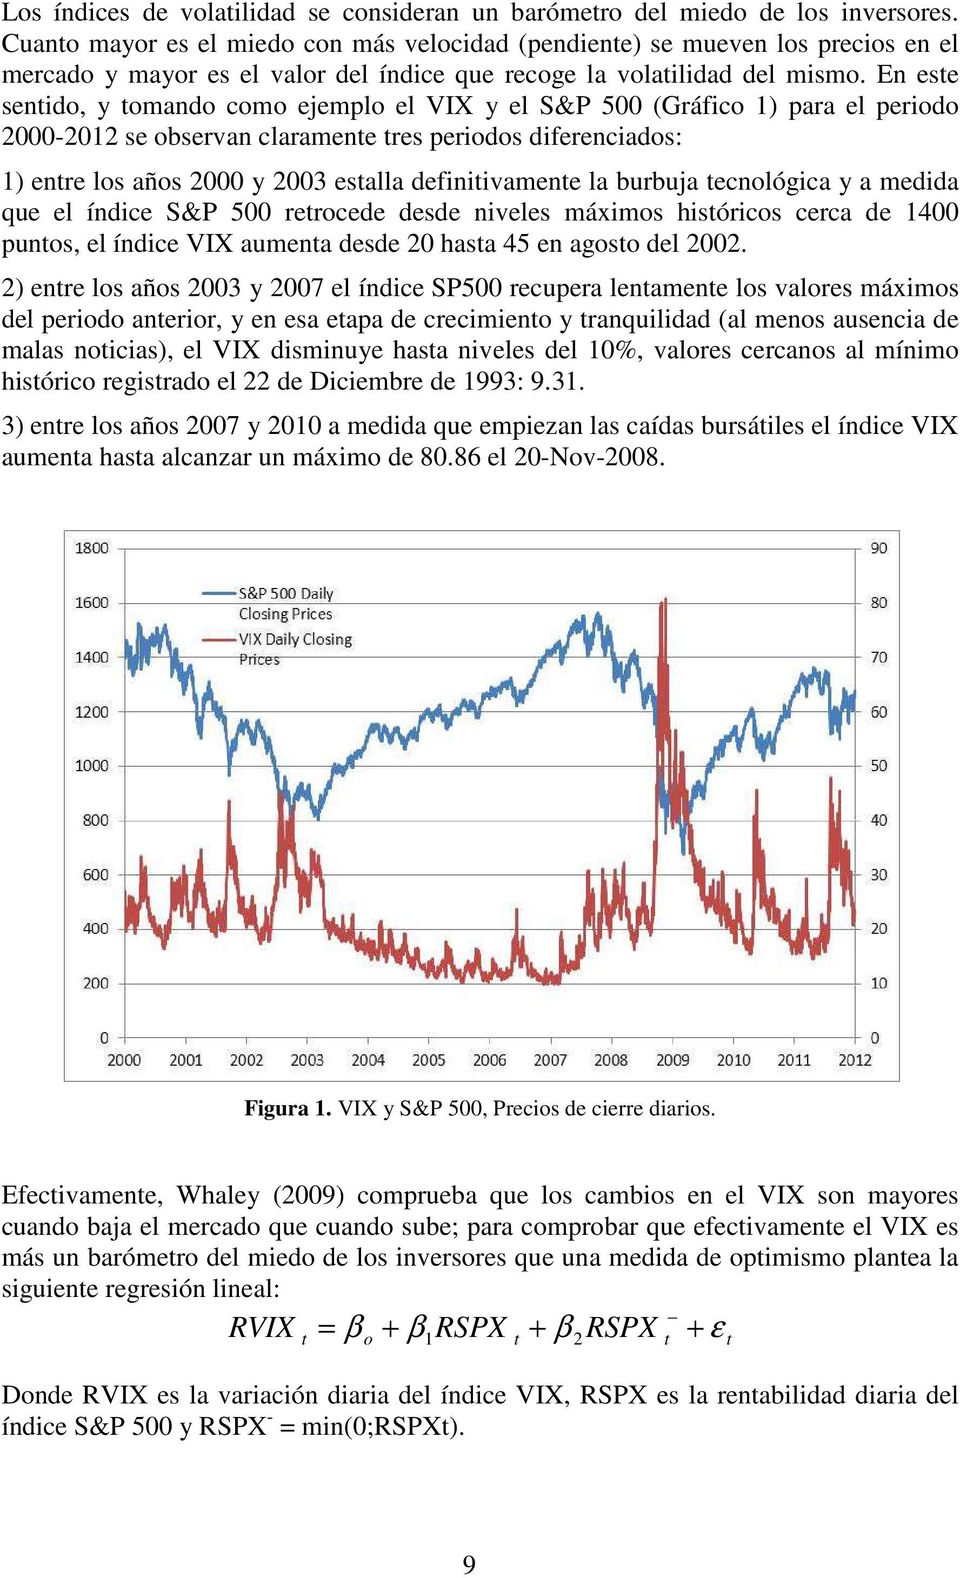 En ese sendo, y omando como ejemplo el VIX y el S&P 500 (Gráfco ) para el perodo 000-0 se observan claramene res perodos dferencados: ) enre los años 000 y 003 esalla defnvamene la burbuja ecnológca